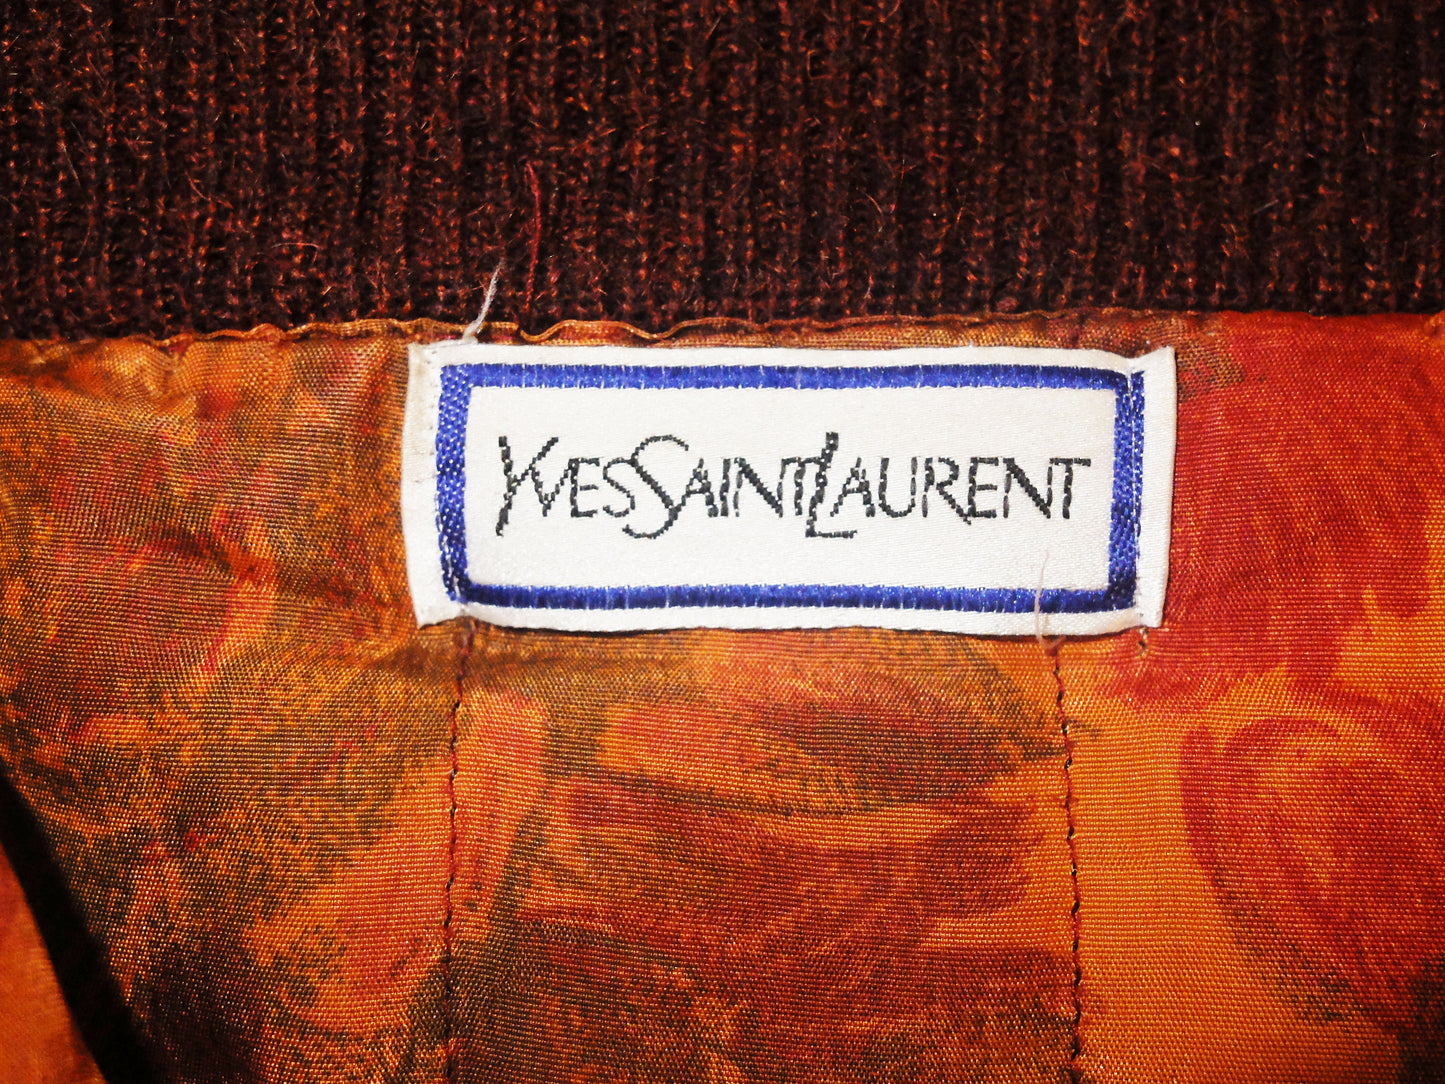 SAINT LAURENT Jackets vintage Lysis Paris pre-owned secondhand